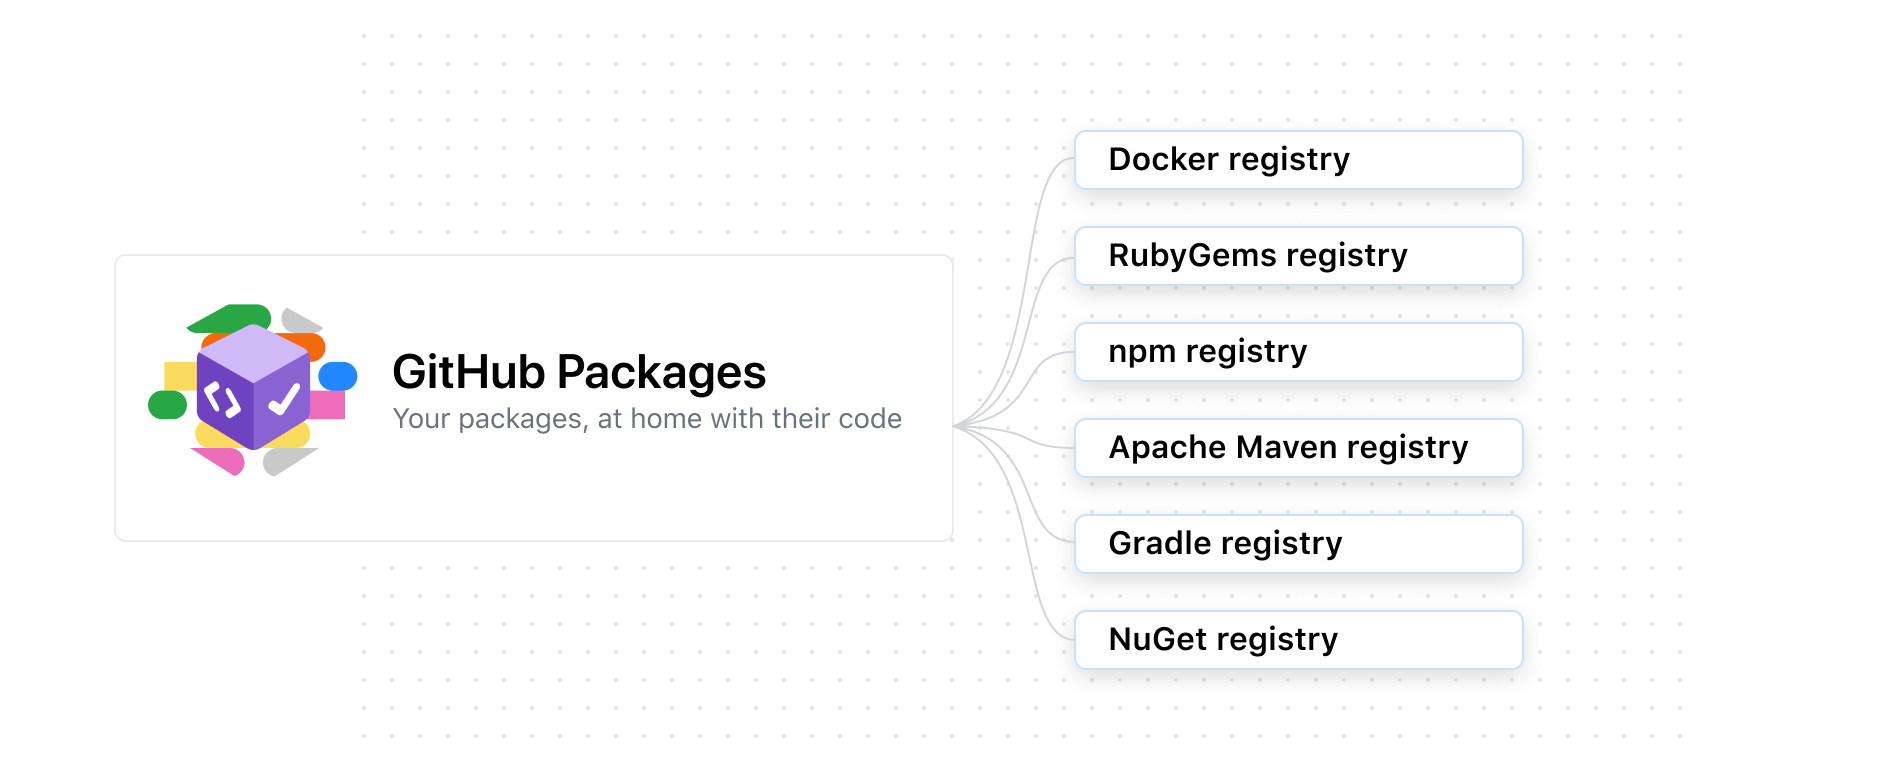 显示支持 Docker、RubyGems、npm、Apache Maven、Gradle、Nuget 和 Docker 的软件包的示意图